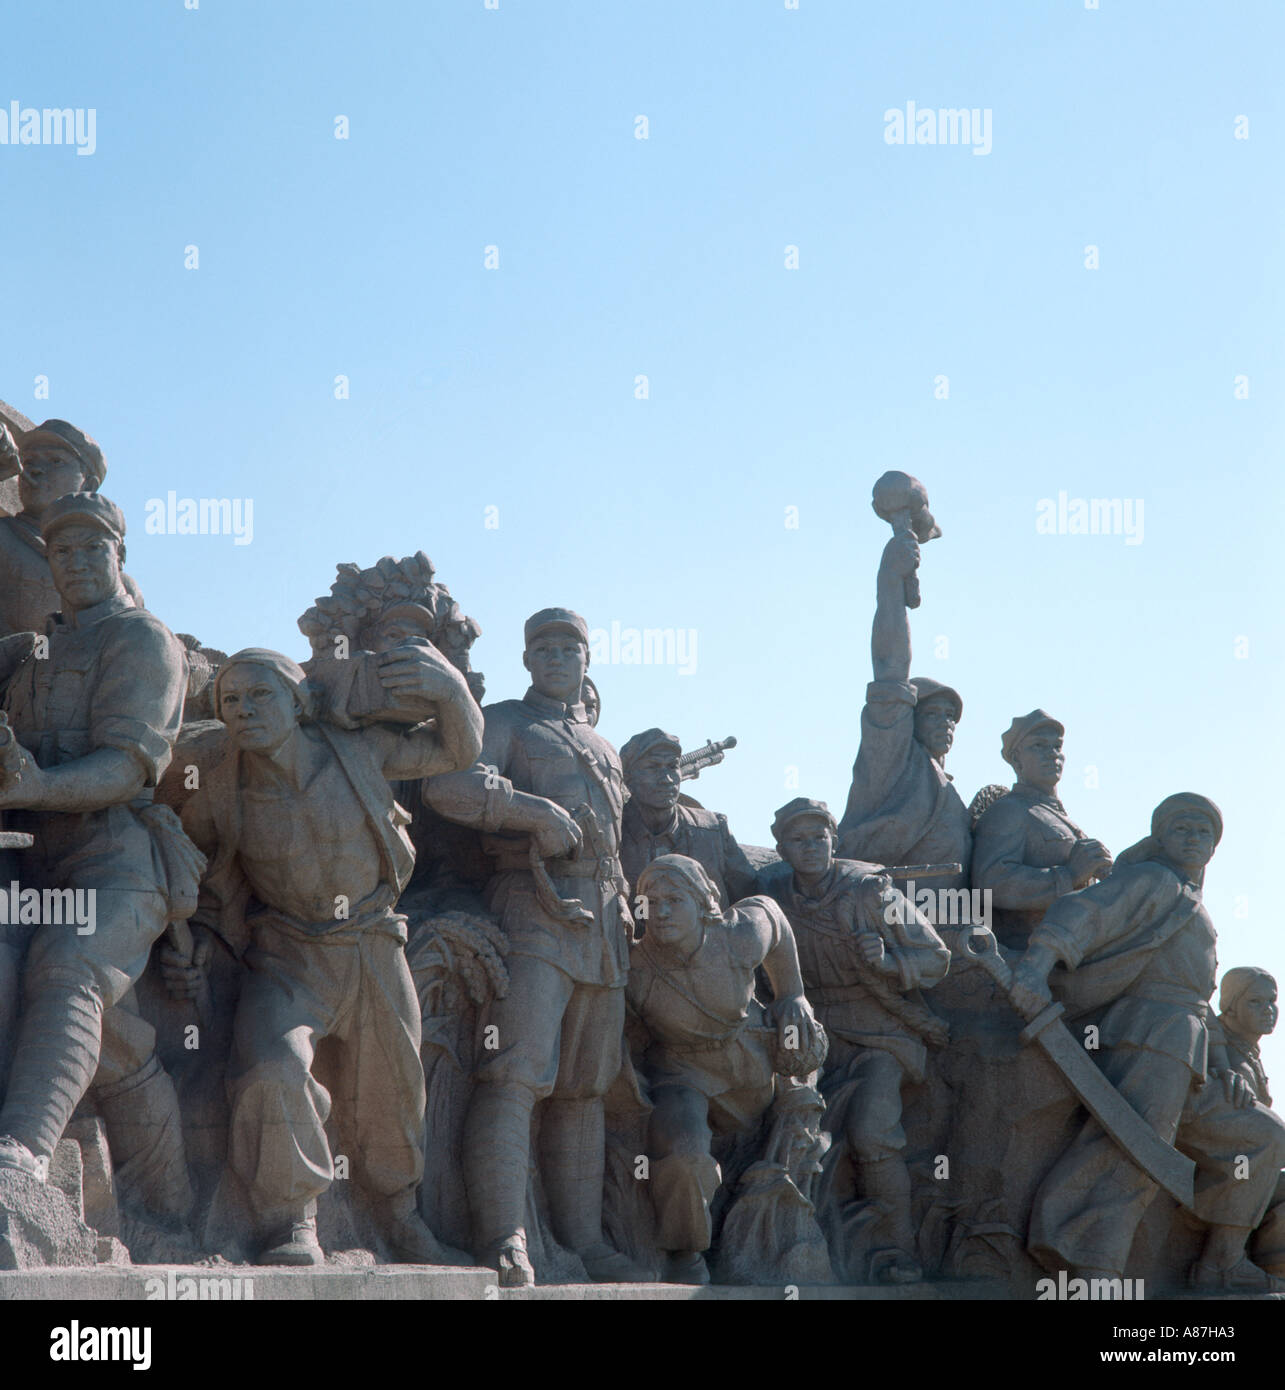 En face des statues de Mao Memorial Hall, la Place Tiananmen, Beijing Chine Banque D'Images